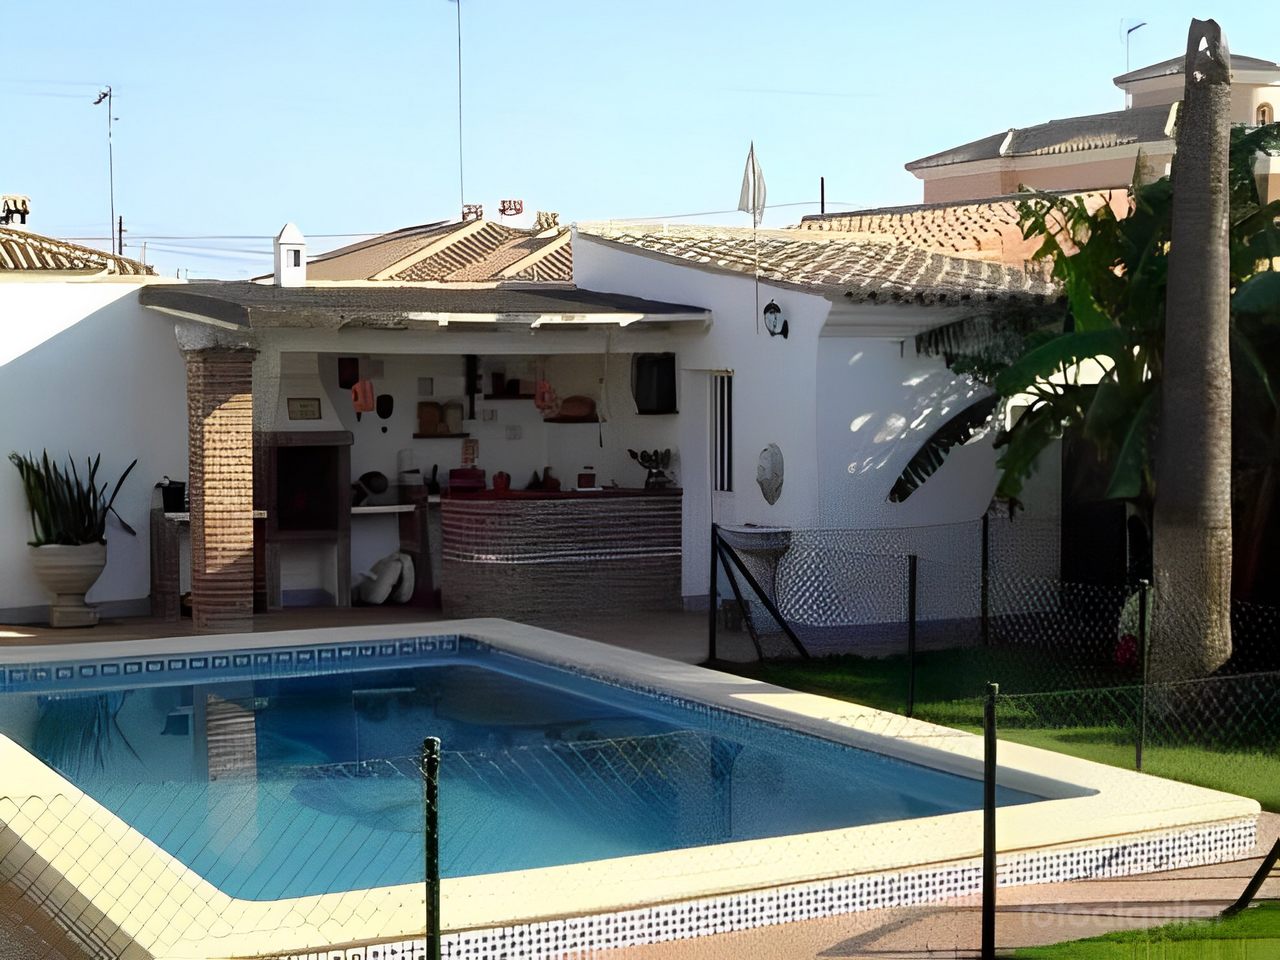 Alquiler de chalet con piscina privada en la urbanización Los Gallos, Chiclana